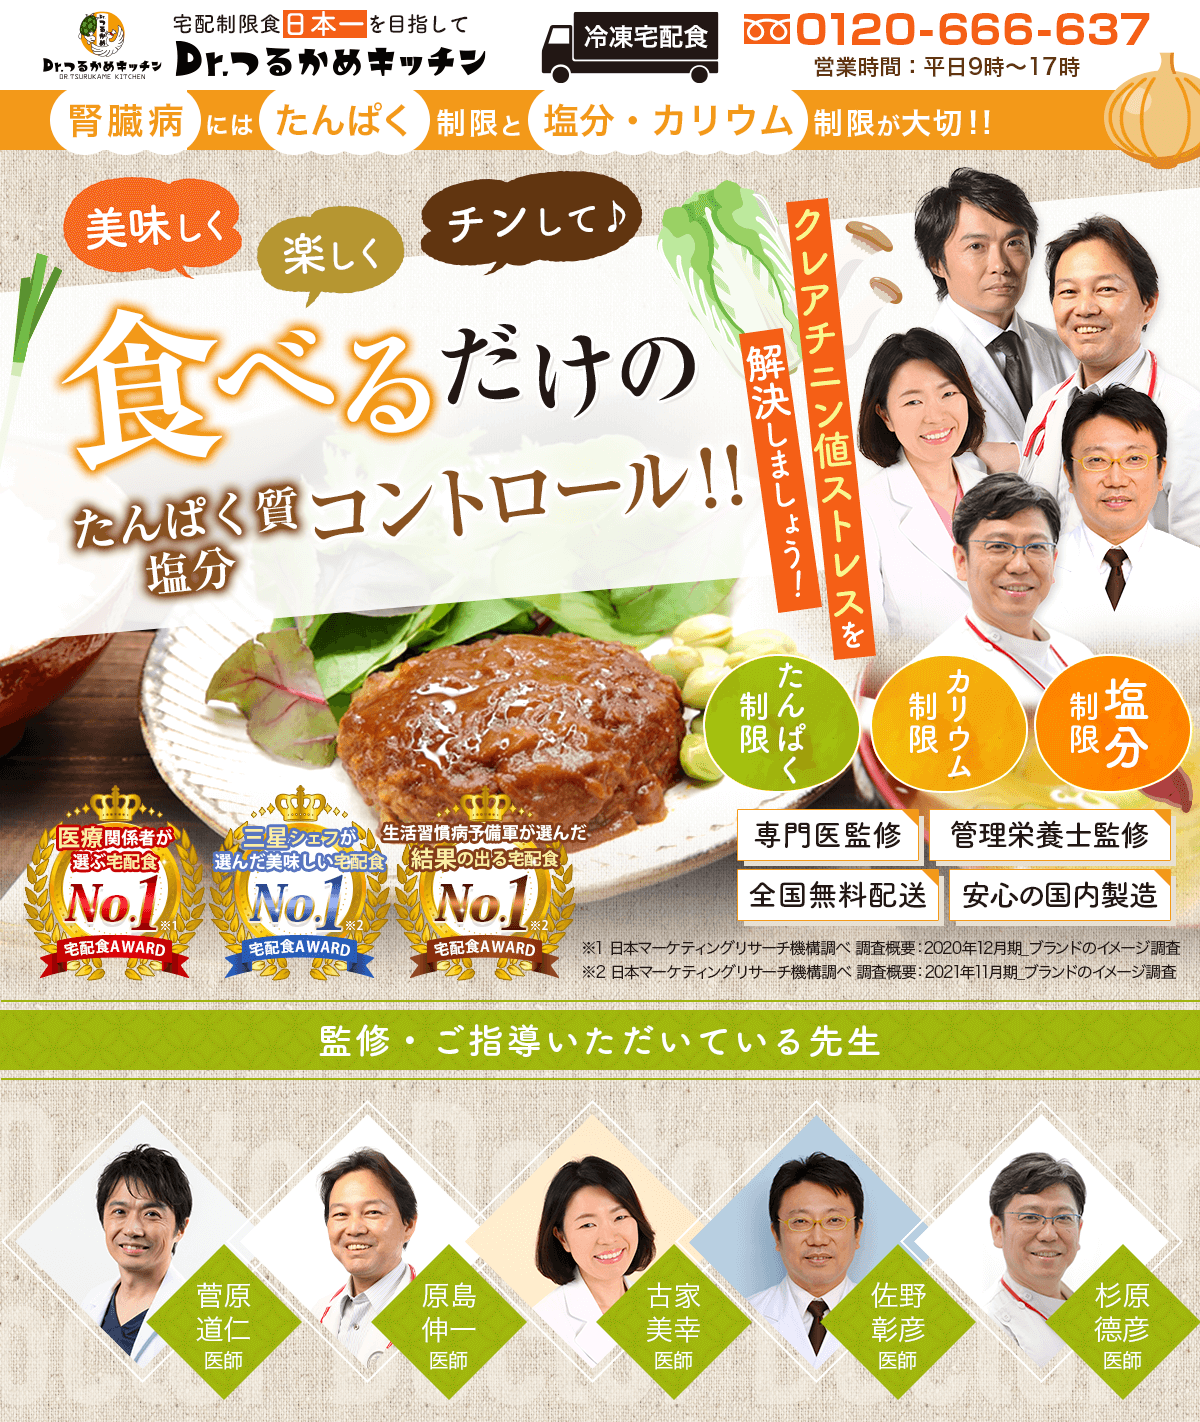 宅配制限食日本一を目指して！美味しく 楽しく チンして 食べるだけのたんぱく質&塩分コントロール生活